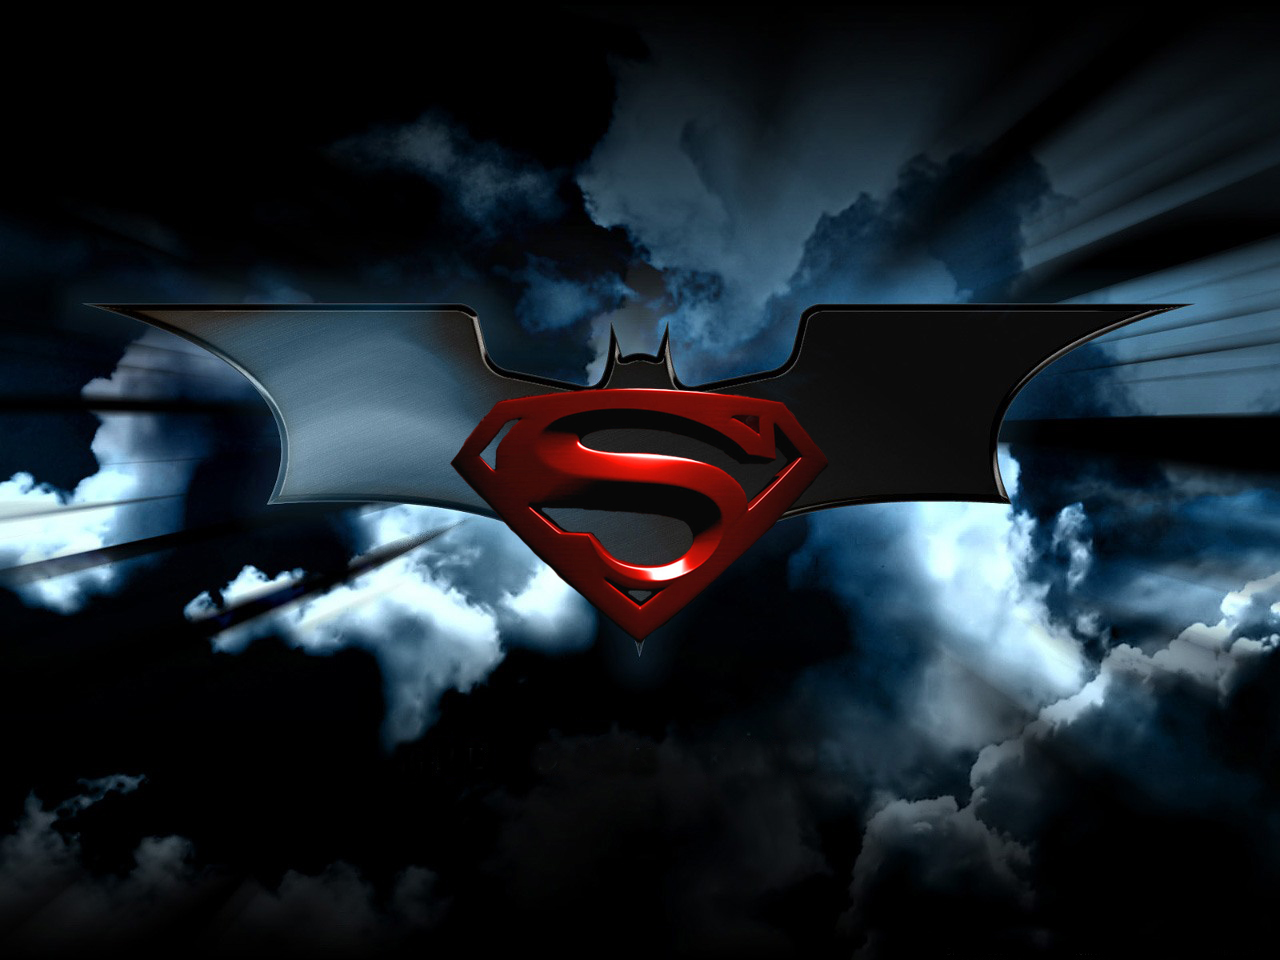 50+] Batman Superman Logo Wallpaper - WallpaperSafari